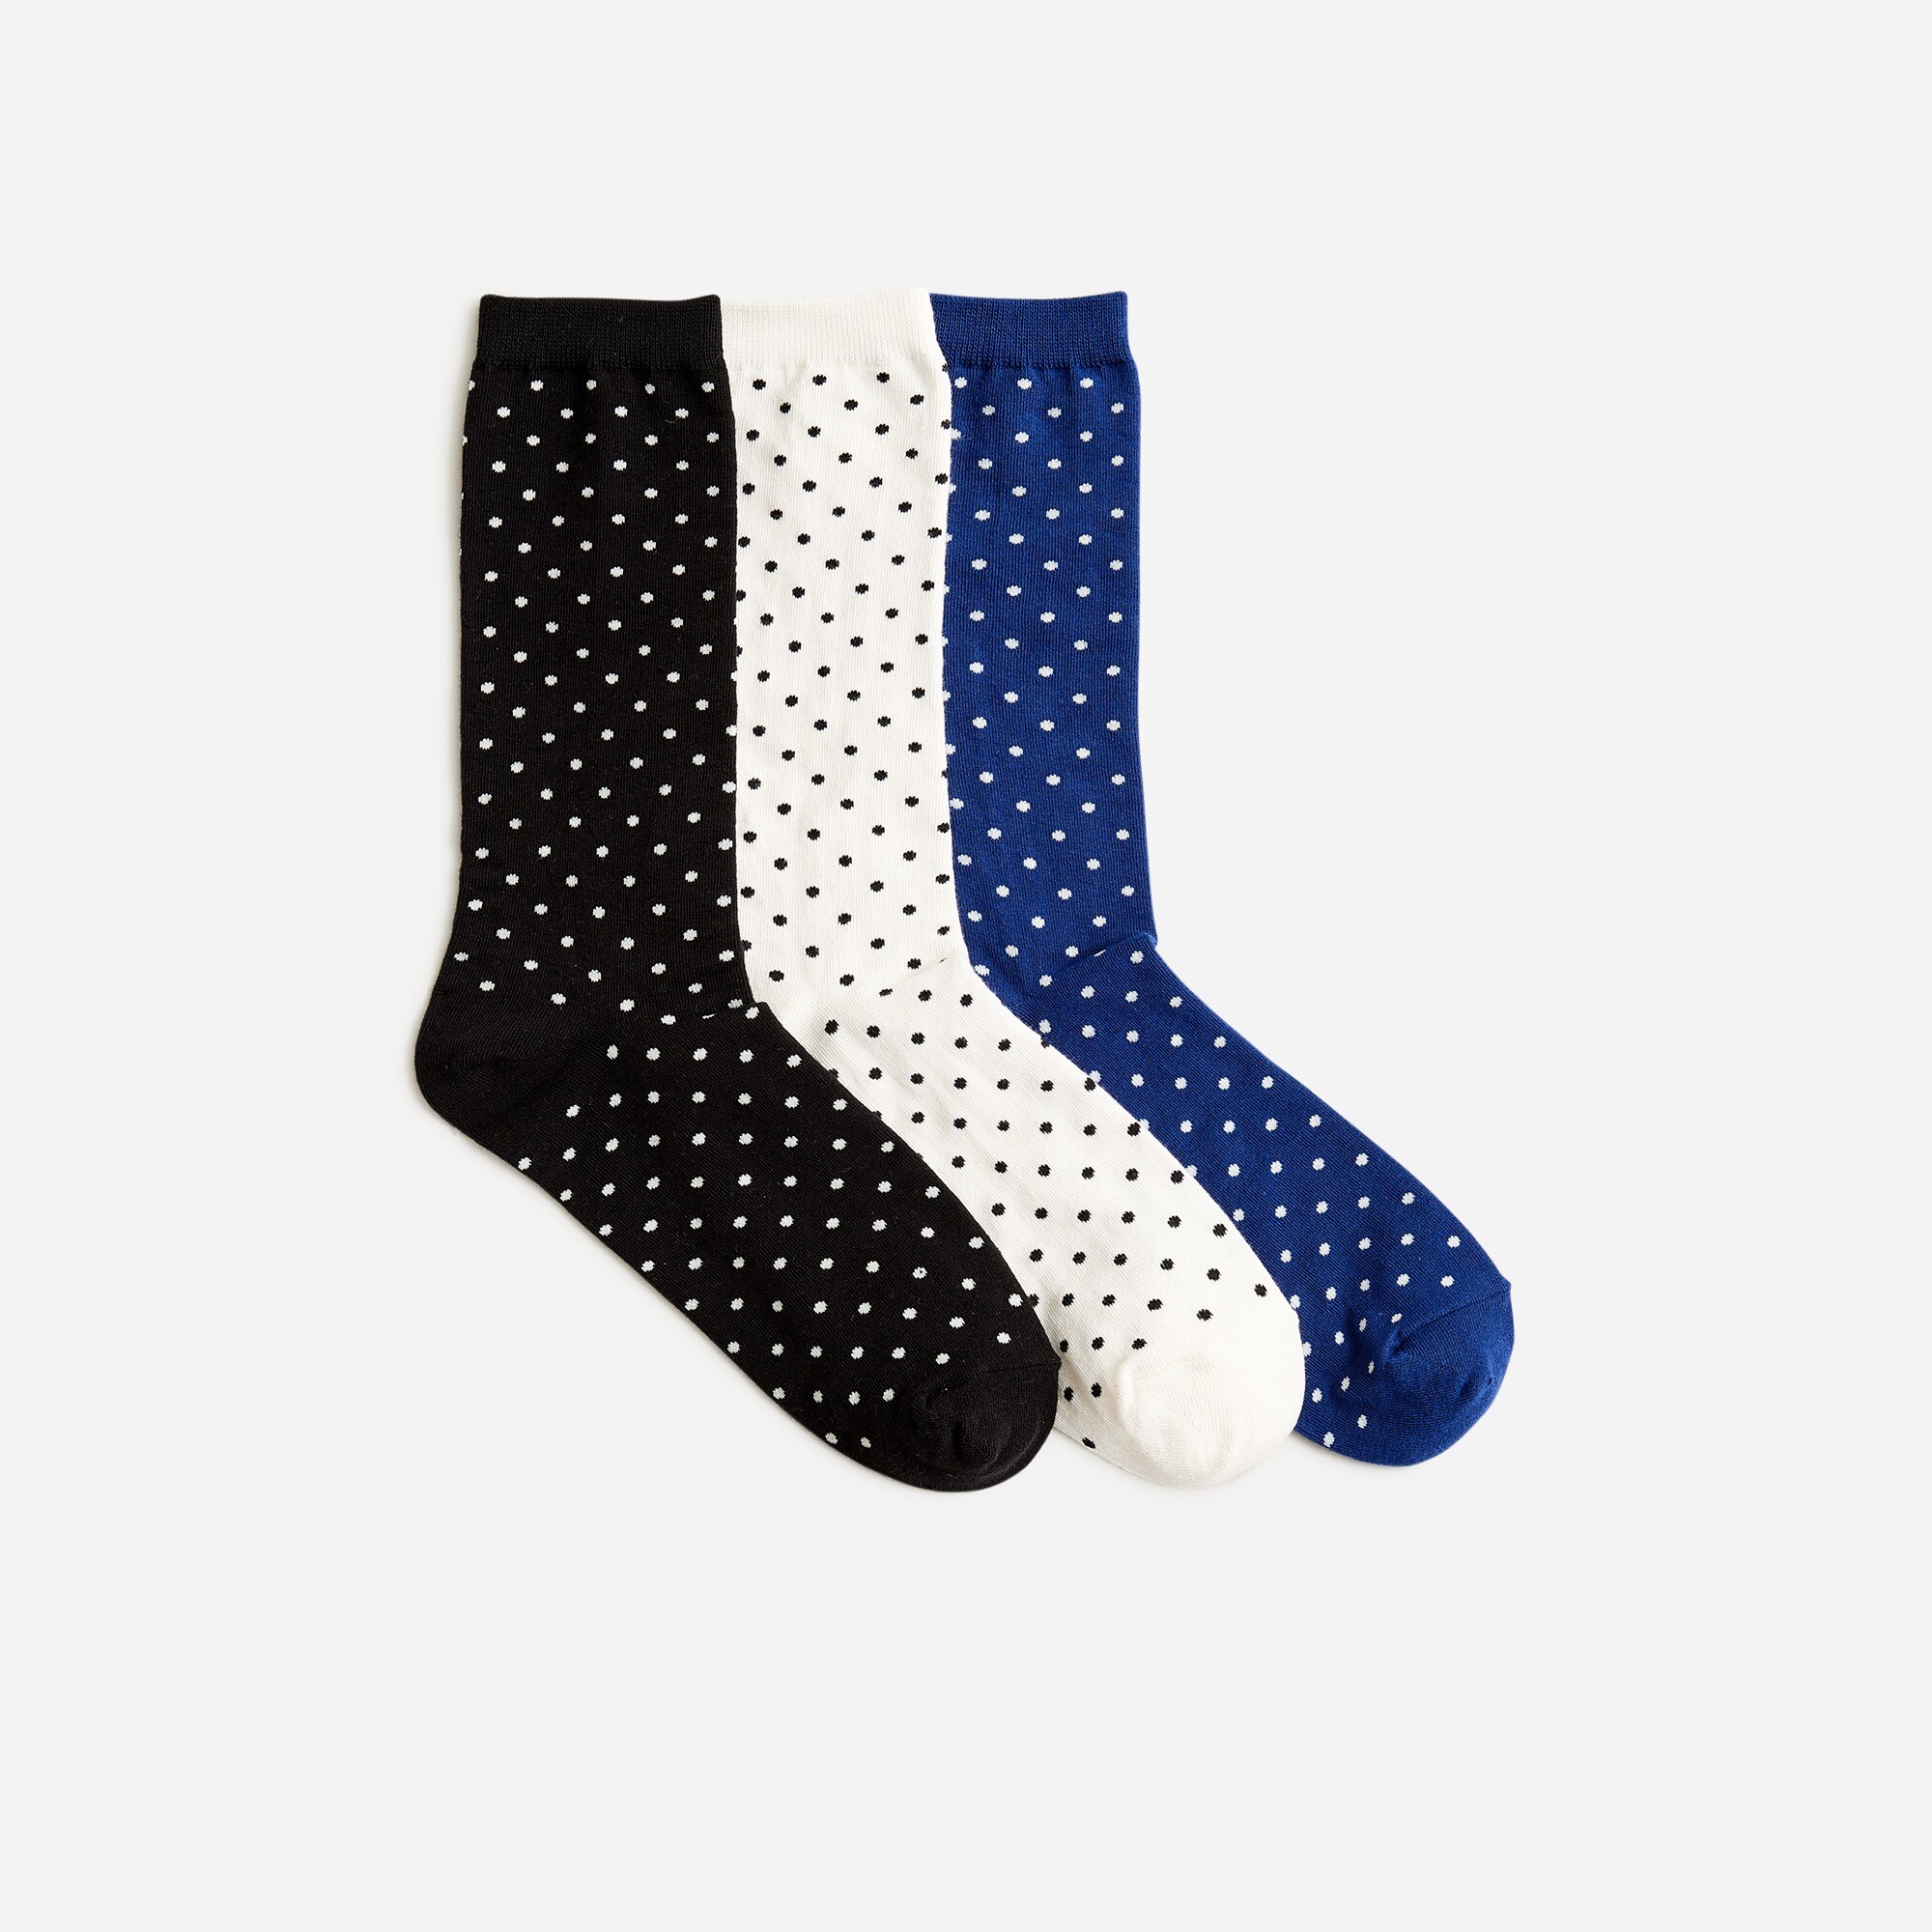  Polka-dot trouser socks three-pack